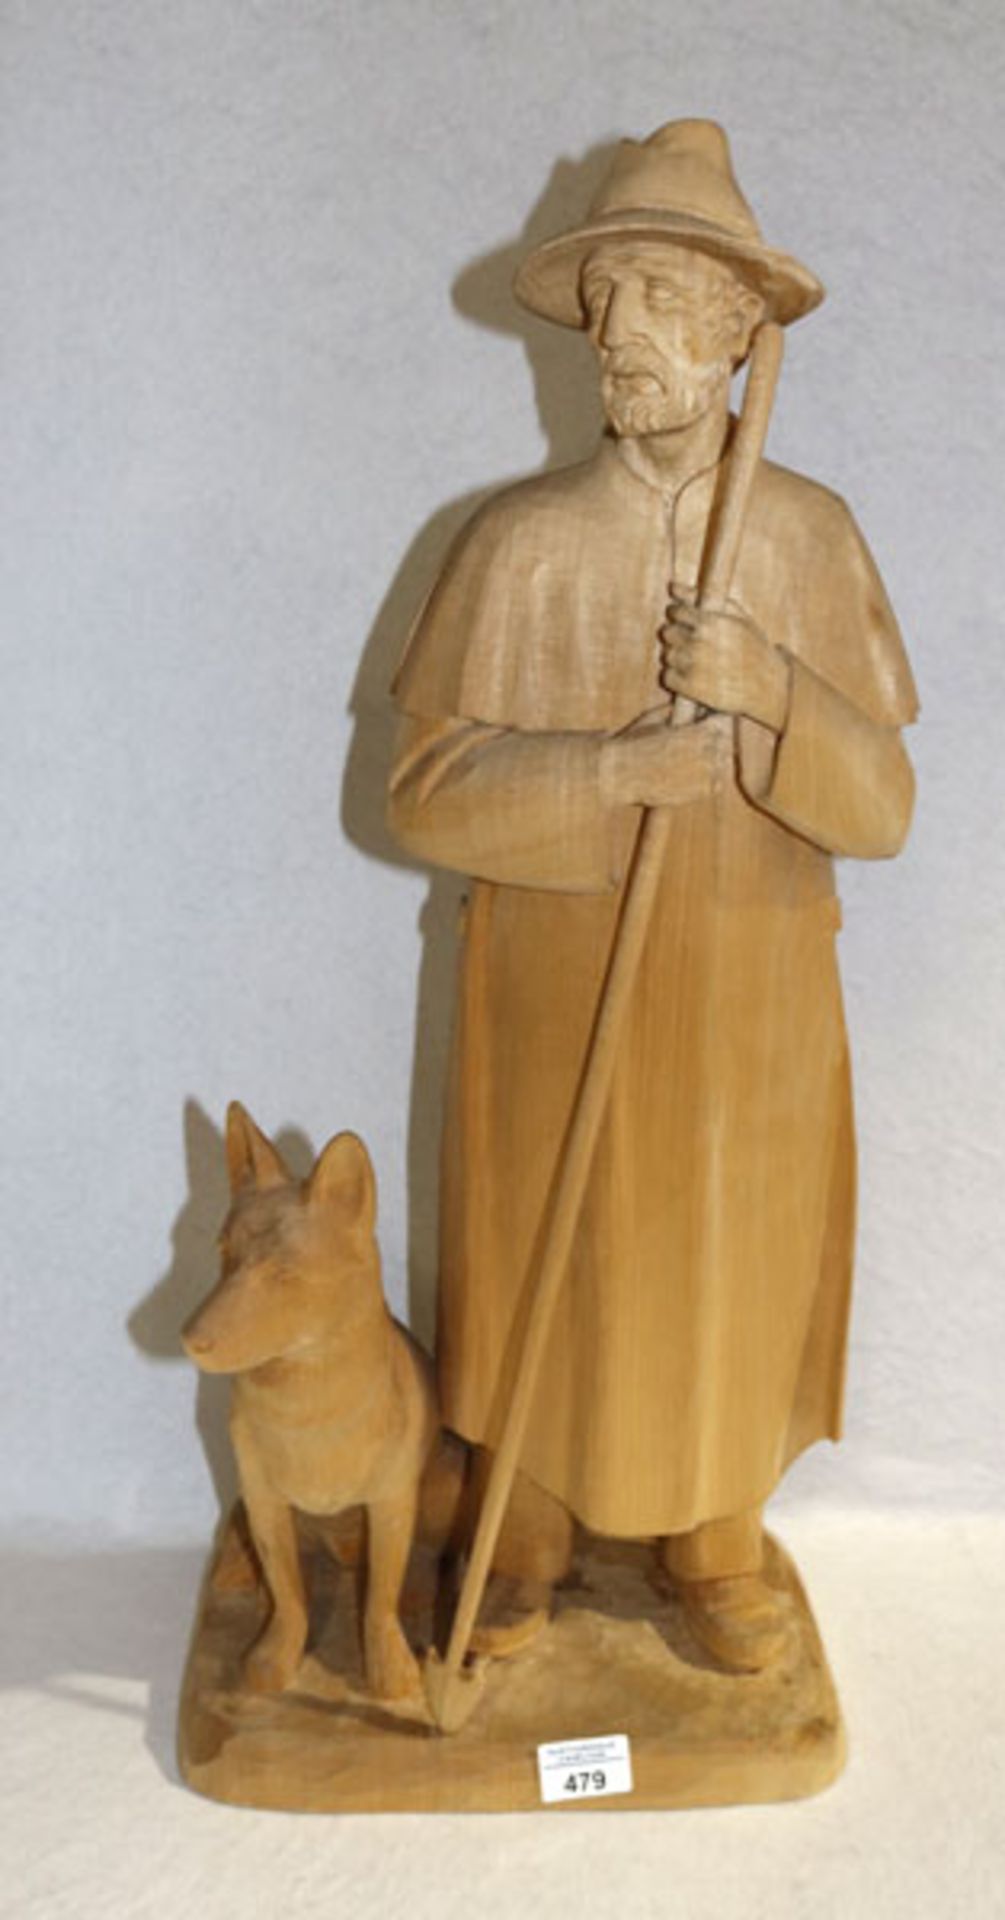 Holz Figurenskulptur 'Schäfer mit Hund', monogrammiert GH datiert 1985, schöne Handarbeit, H 67